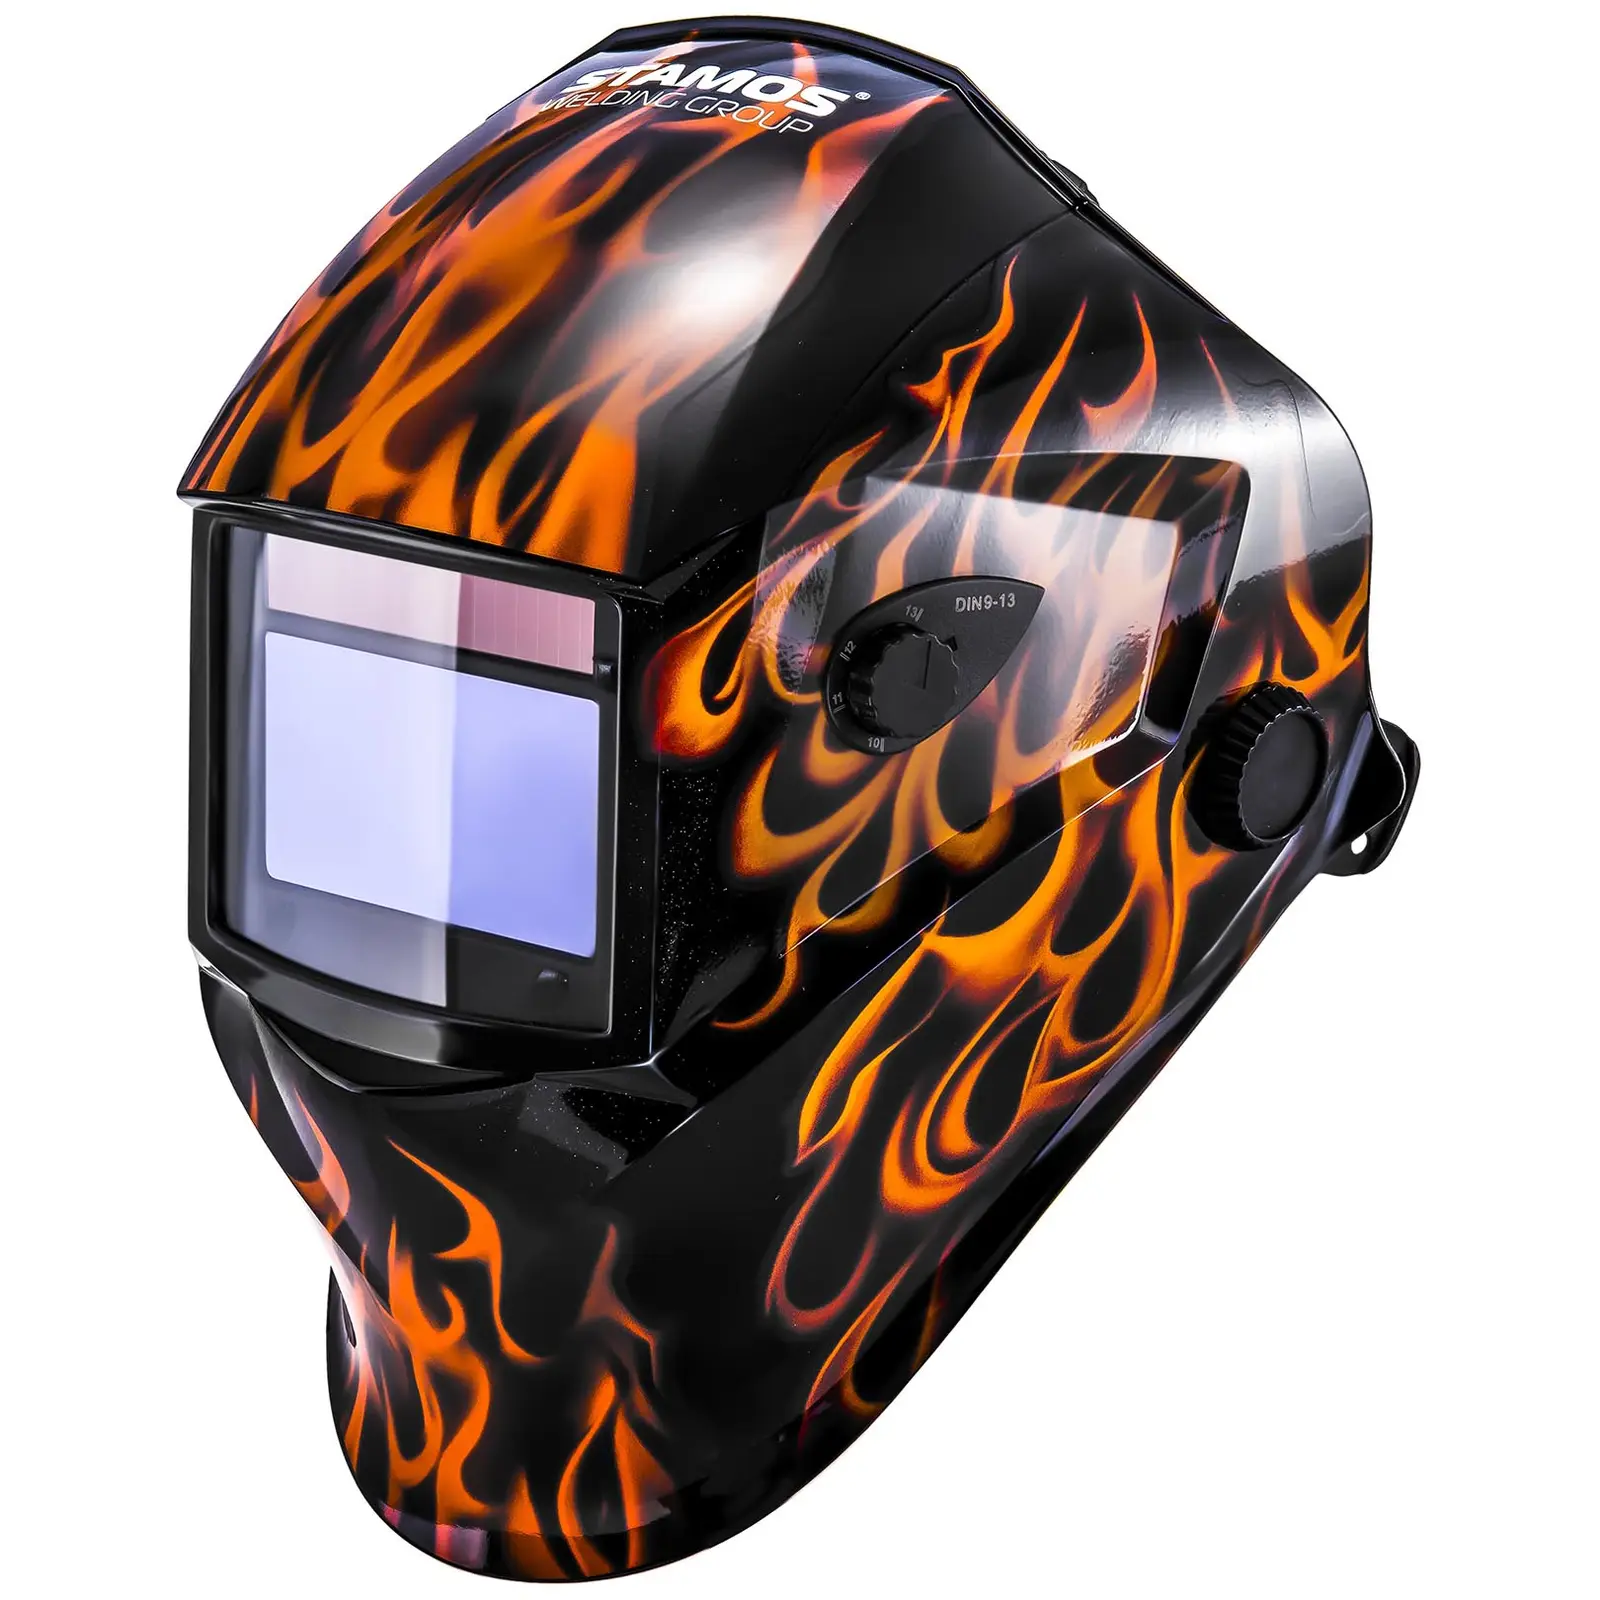 Svářecí helma - Firestarter 500 - advanced series